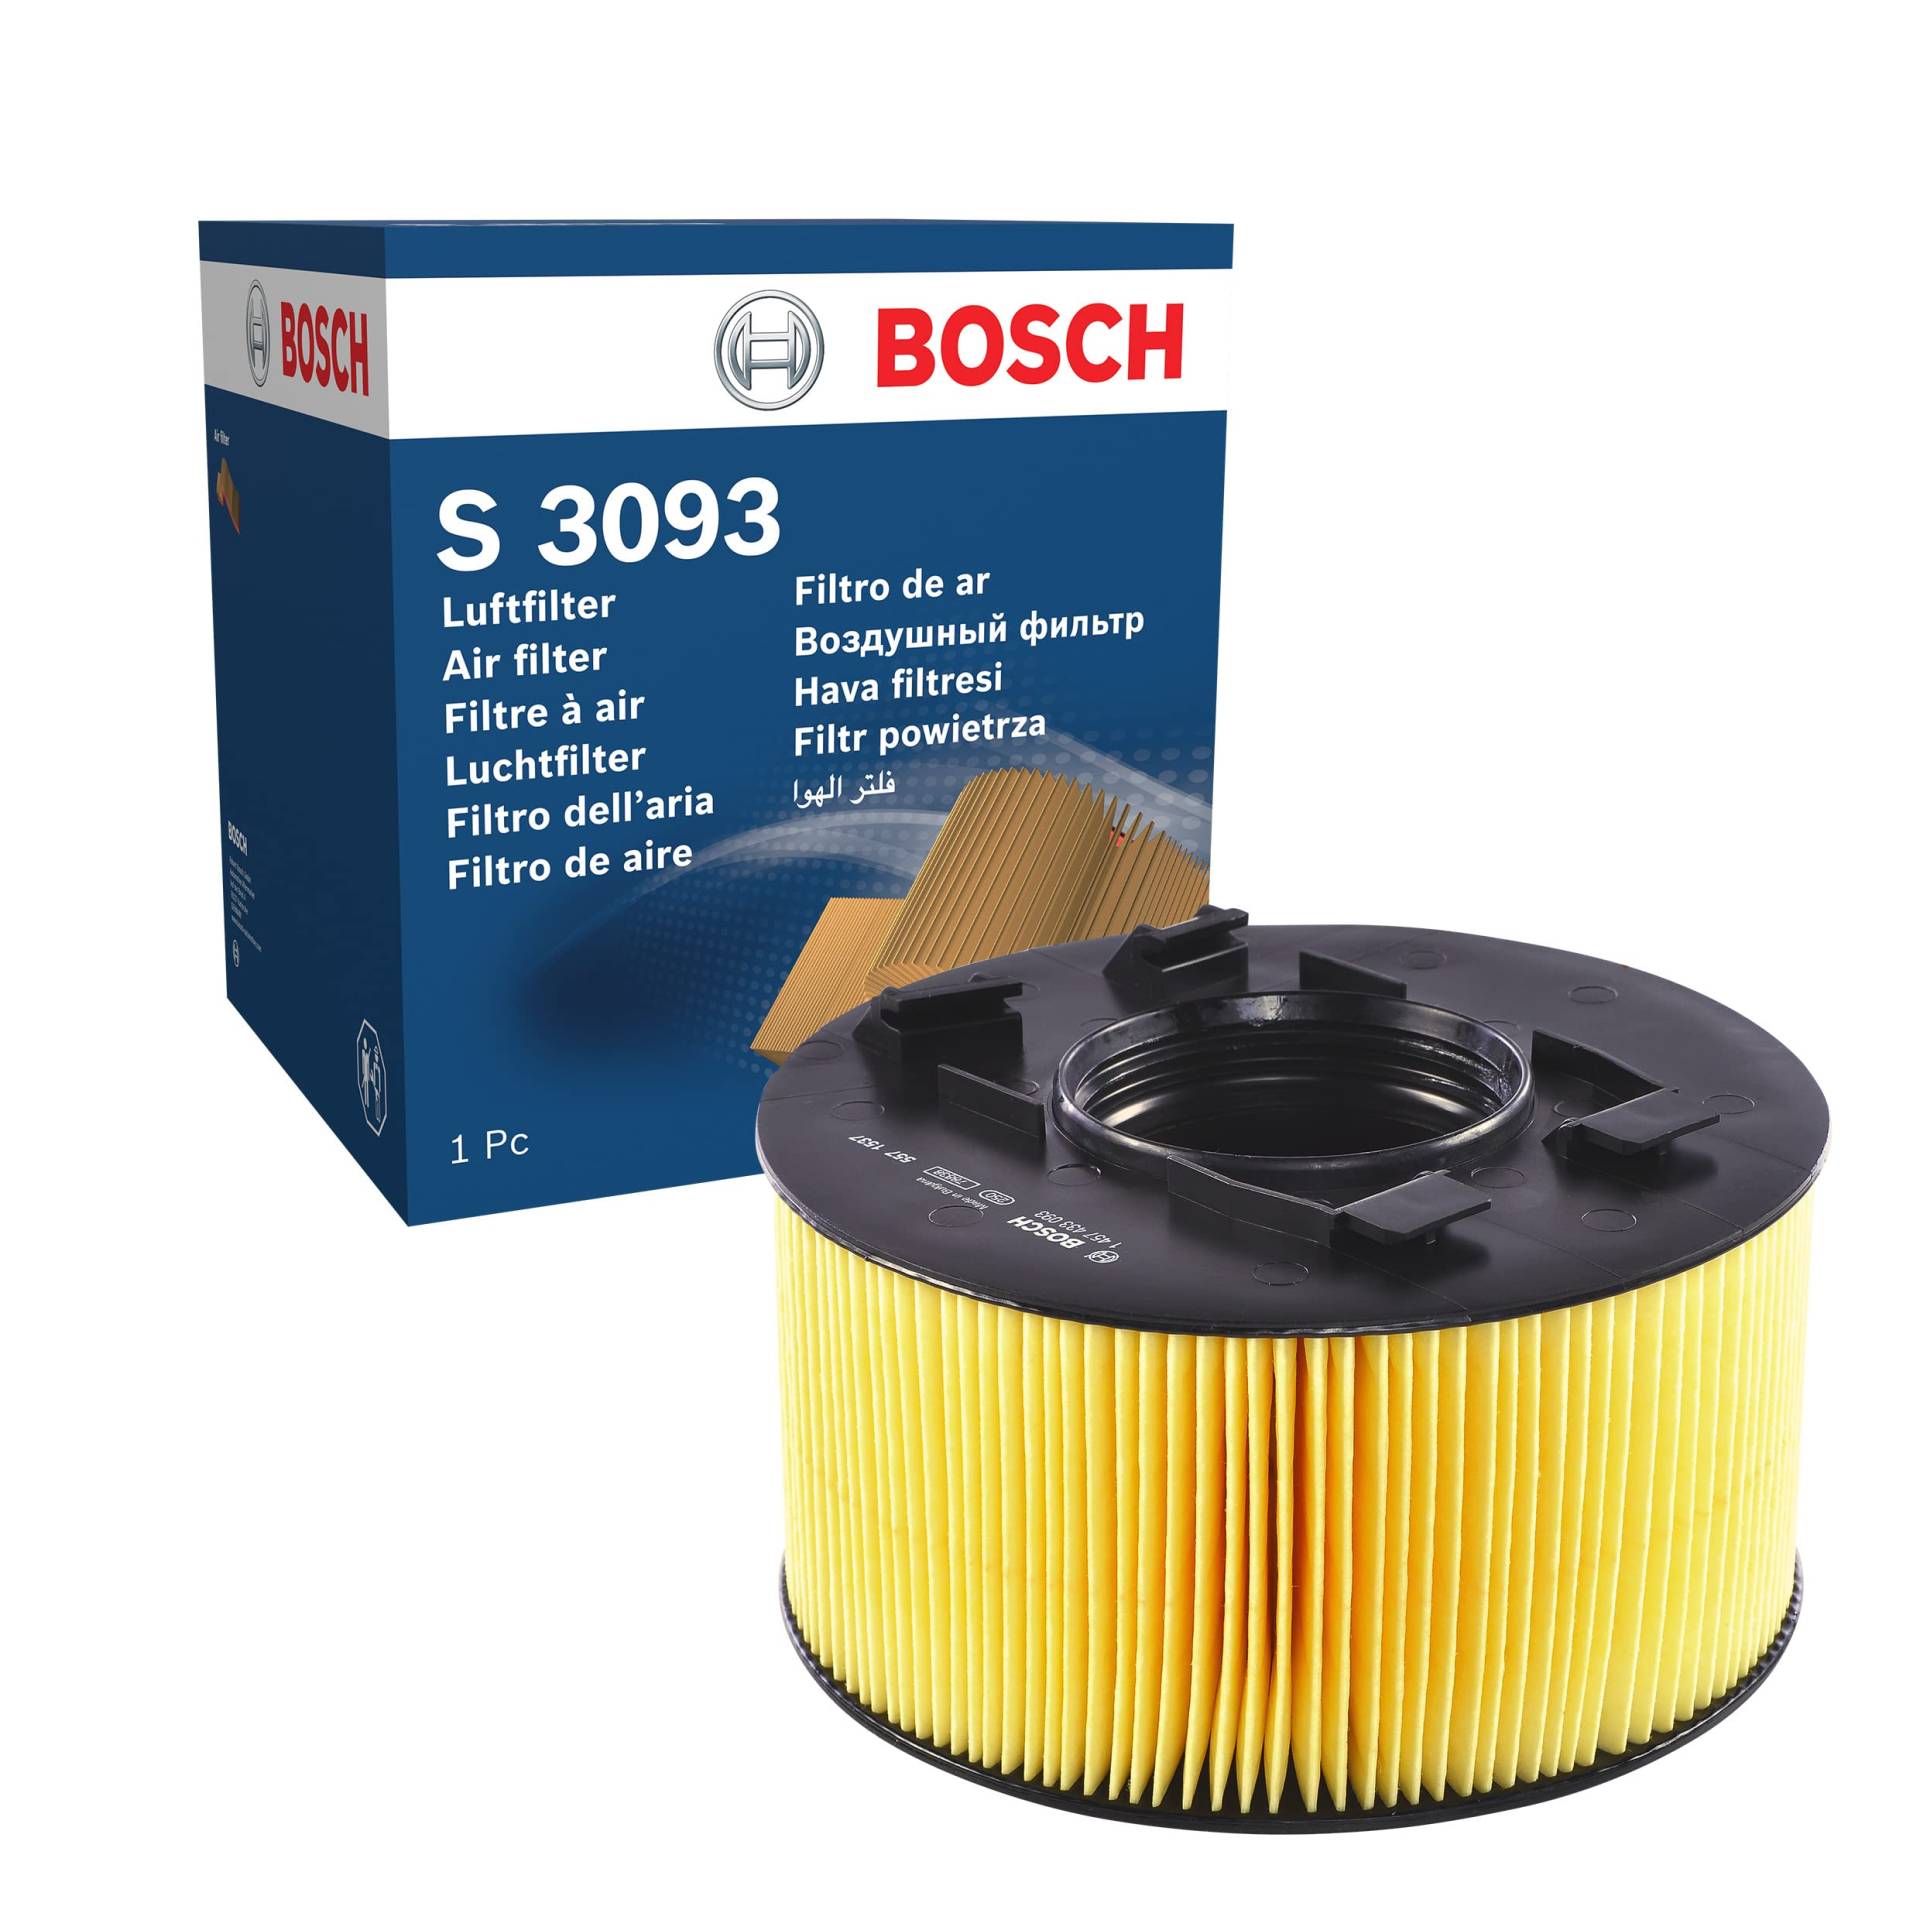 Bosch S3093 - Luftfilter Auto von Bosch Automotive